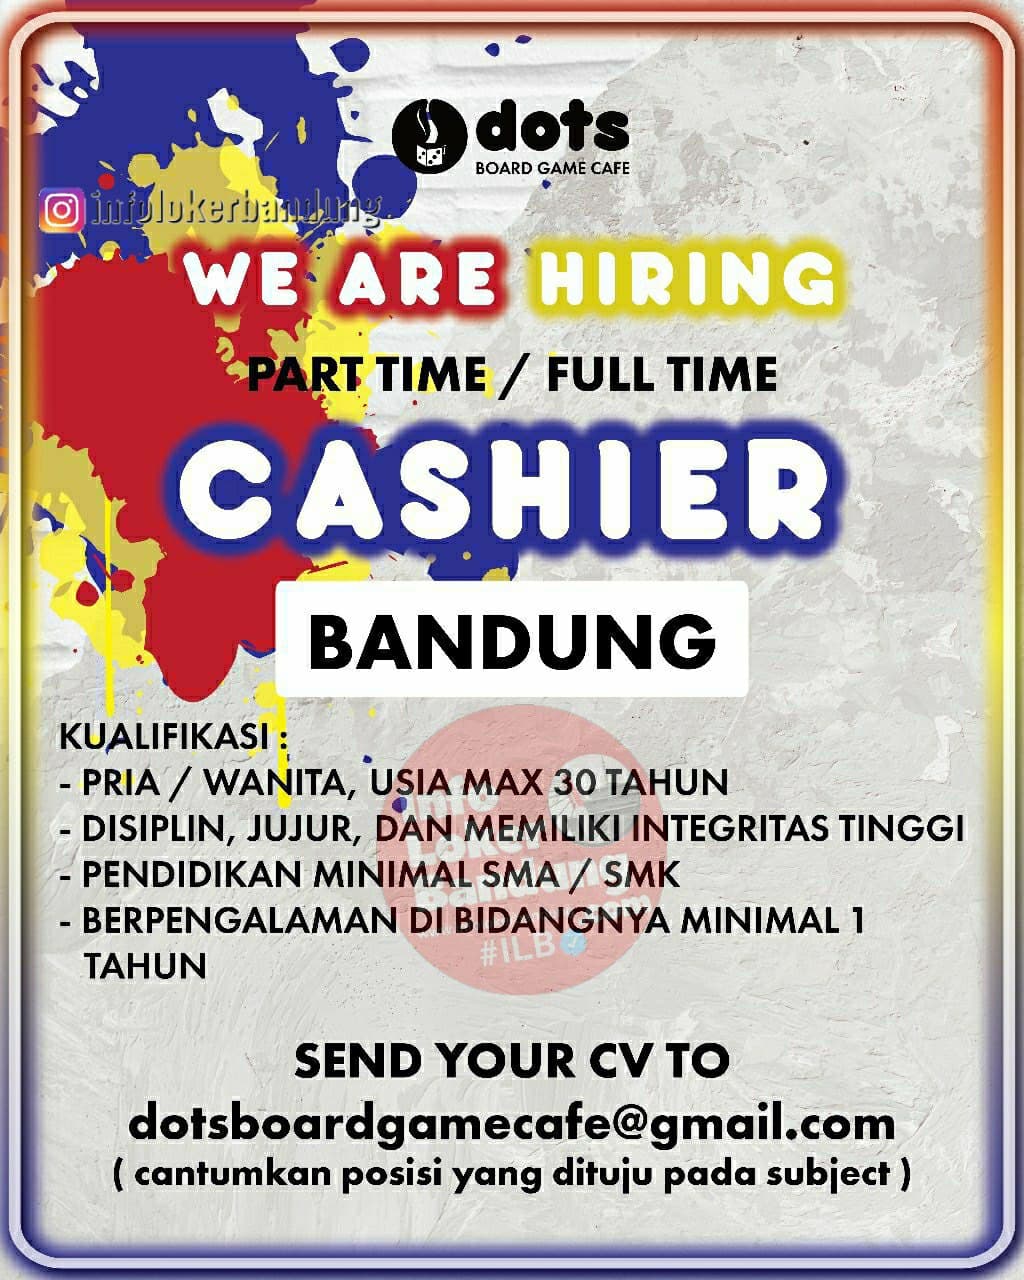 Lowongan Kerja Part Time / Full Time Cashier Dots Board Game Cafe Bandung April 2021